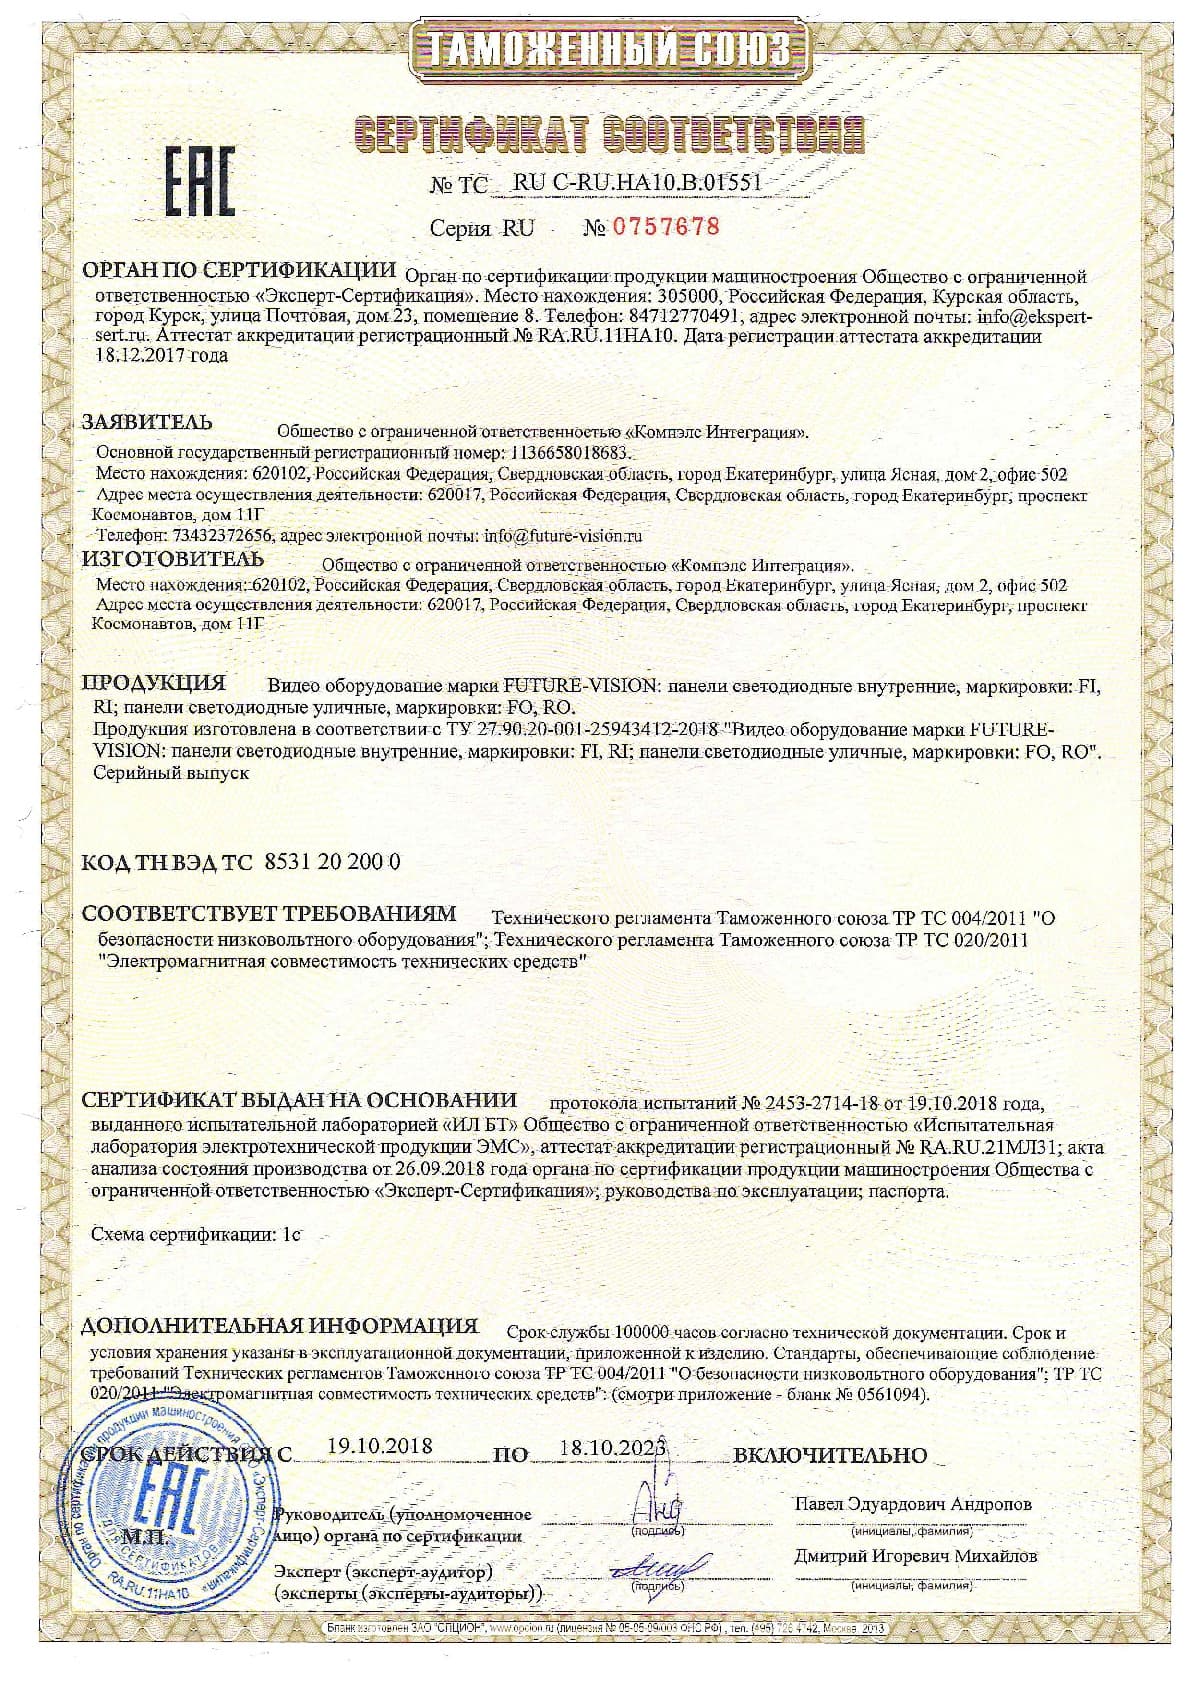 Сертификат соответствия СТ-1